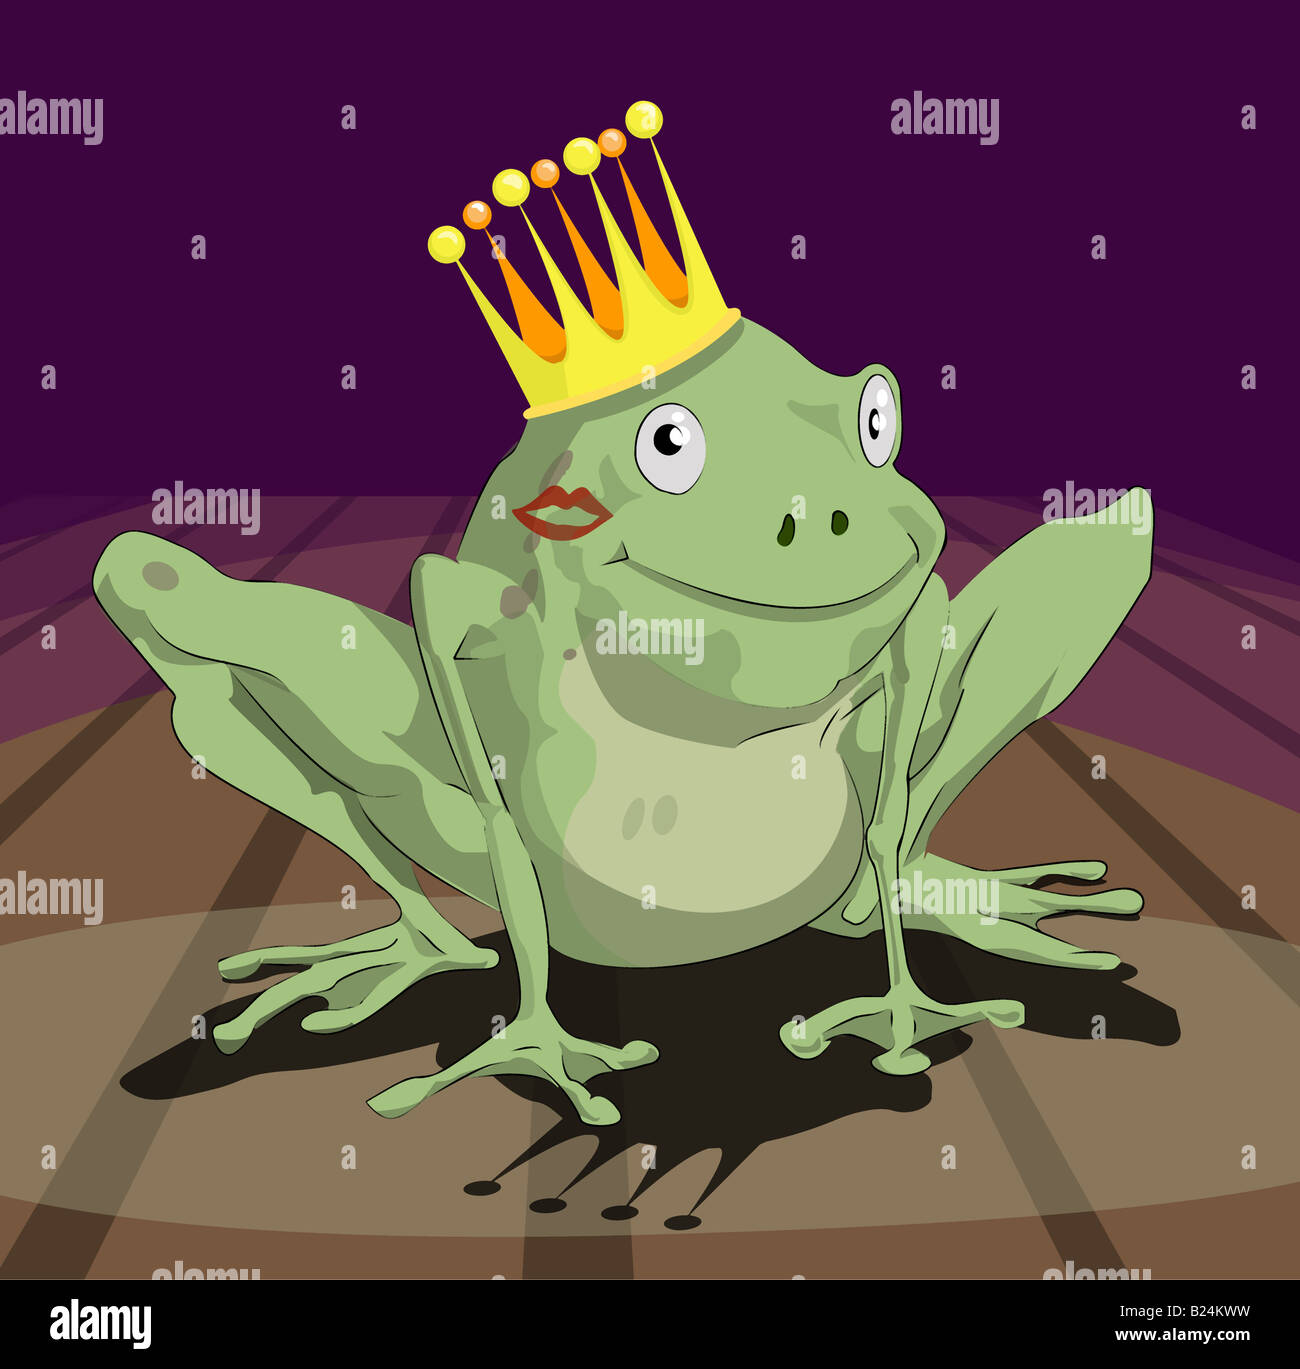 Devi baciare un sacco di rane per trovare un principe/ princess. Una rana che indossa una corona con il rossetto sulla sua guancia. Foto Stock